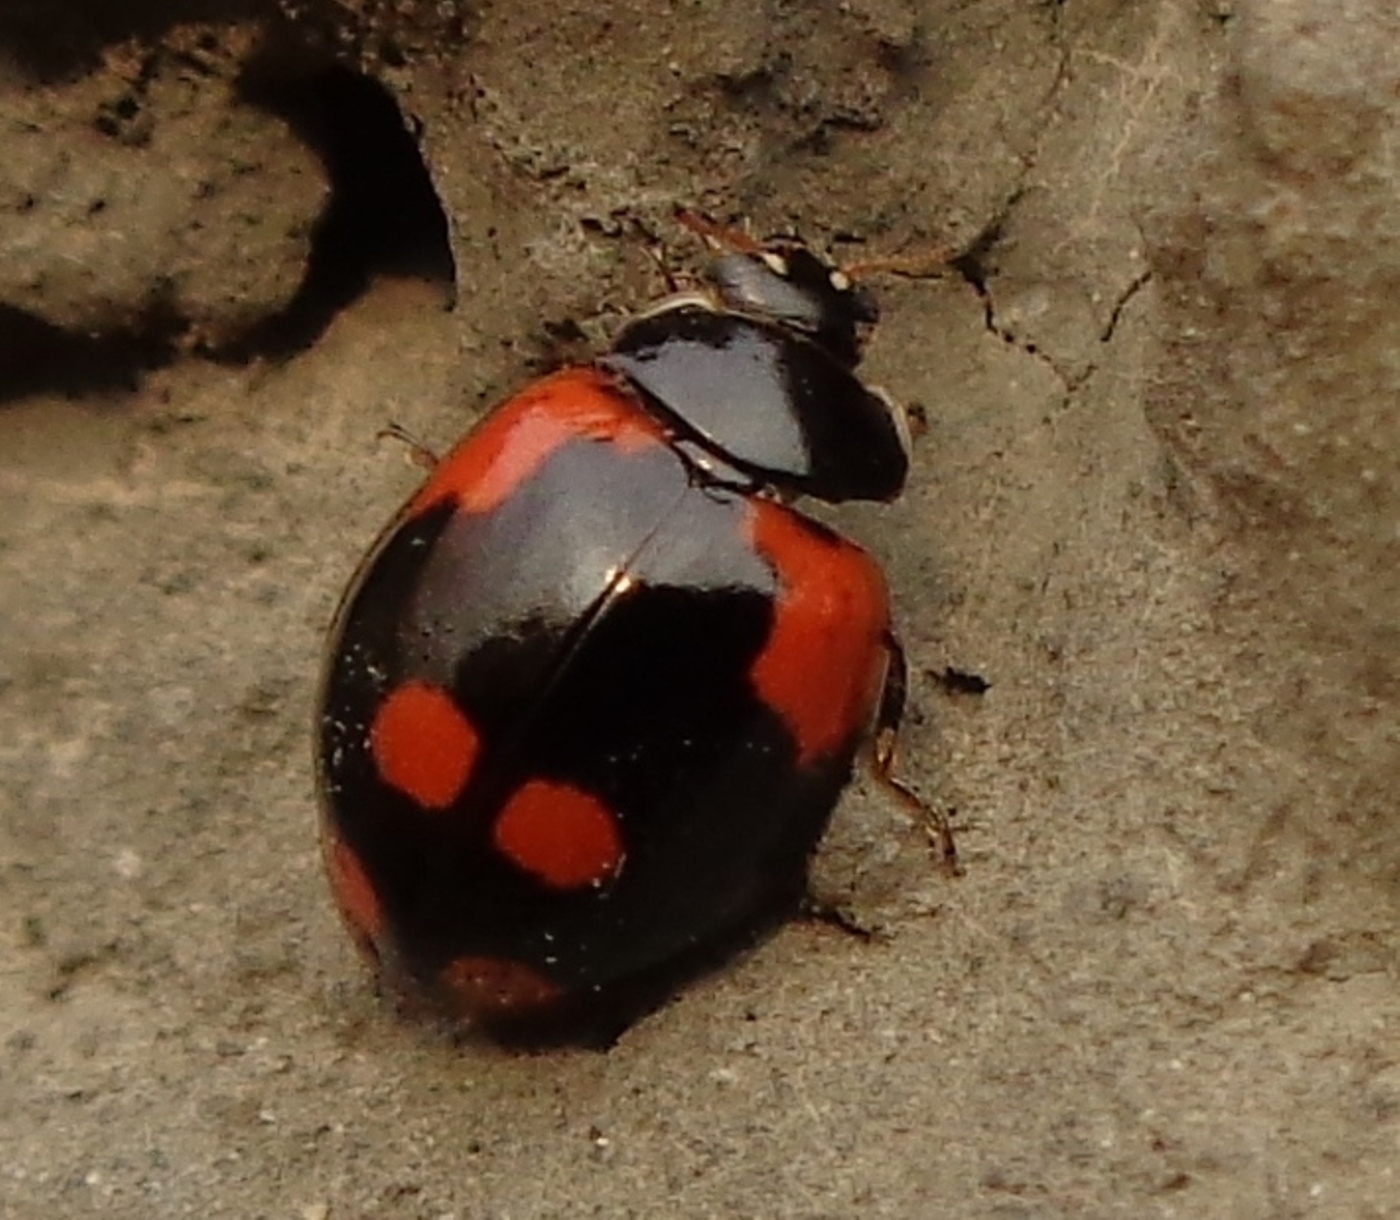 Ladybug Exochomus สี่จุด (Exochomus quadripustulatus)